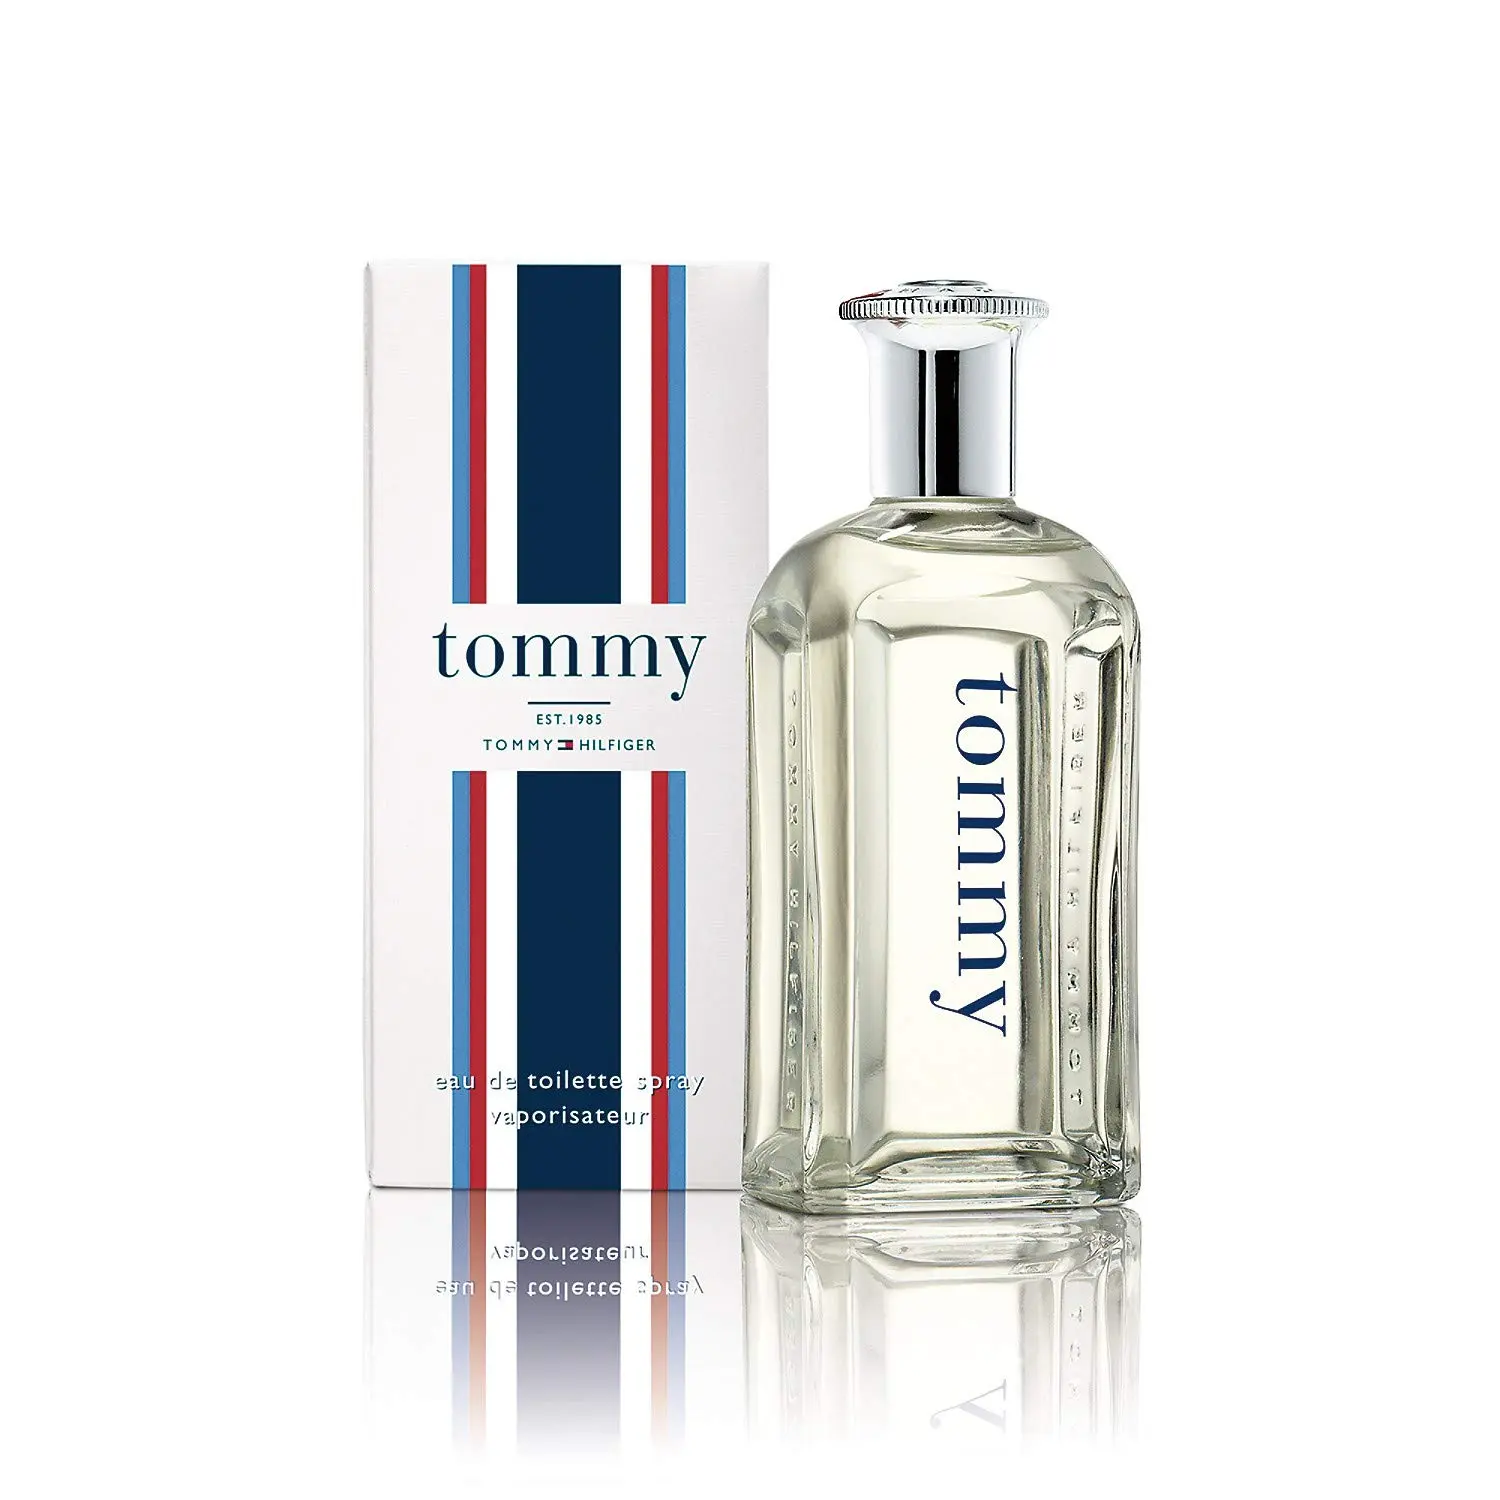 perfumes de tommy hilfiger para hombre - Qué tipo de fragancia es Tommy Hilfiger